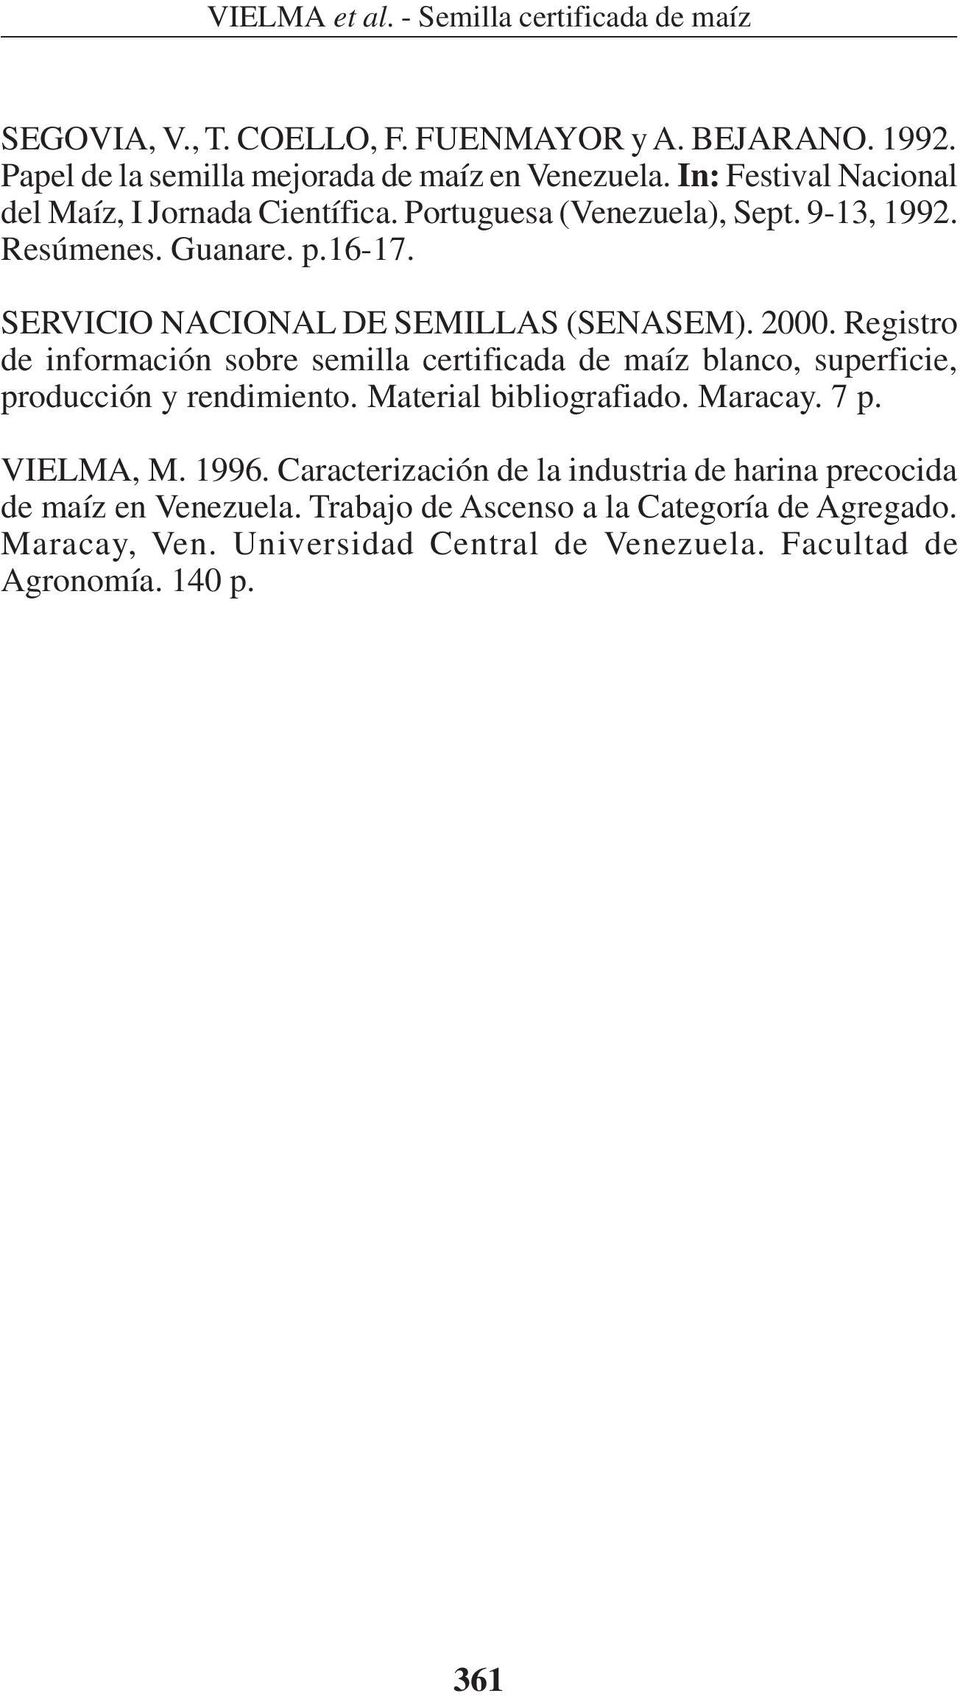 Registro de información sobre semilla certificada de maíz blanco, superficie, producción y rendimiento. Material bibliografiado. Maracay. 7 p. VIELMA, M. 1996.